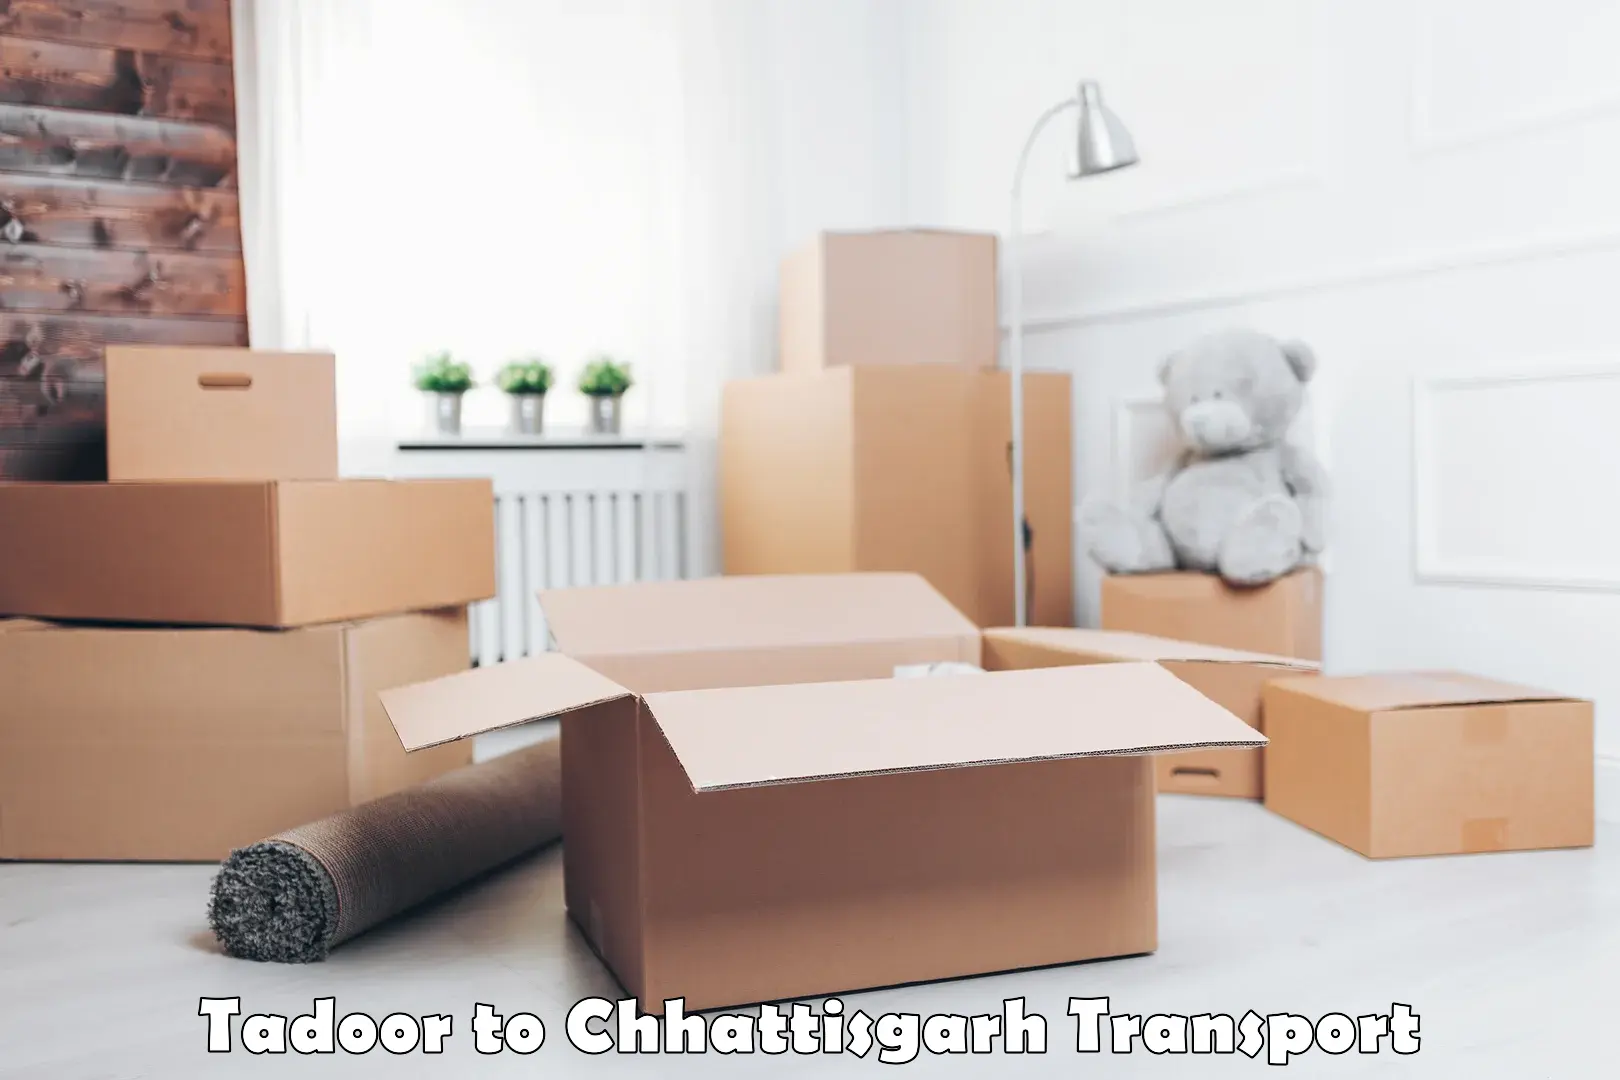 Goods transport services Tadoor to Berla